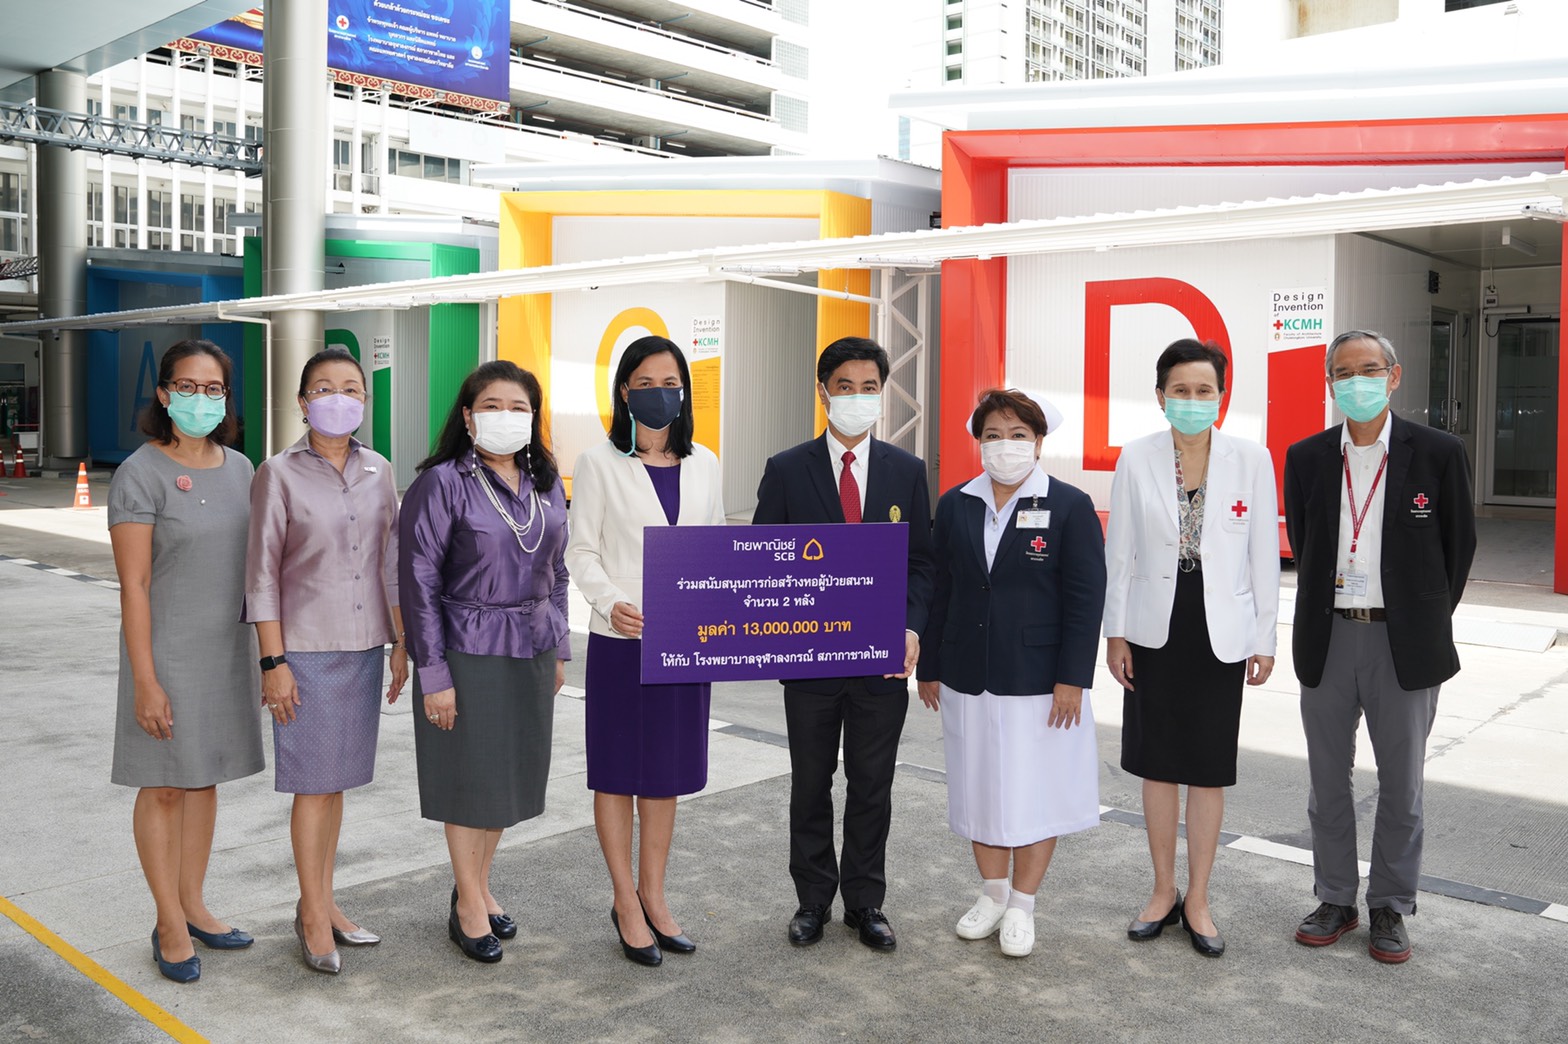 ธนาคารไทยพาณิชย์ร่วมบรรเทาวิกฤตโควิด-19 สนับสนุนการก่อสร้างหอผู้ป่วยสนาม รพ.จุฬาลงกรณ์ สภากาชาดไทย